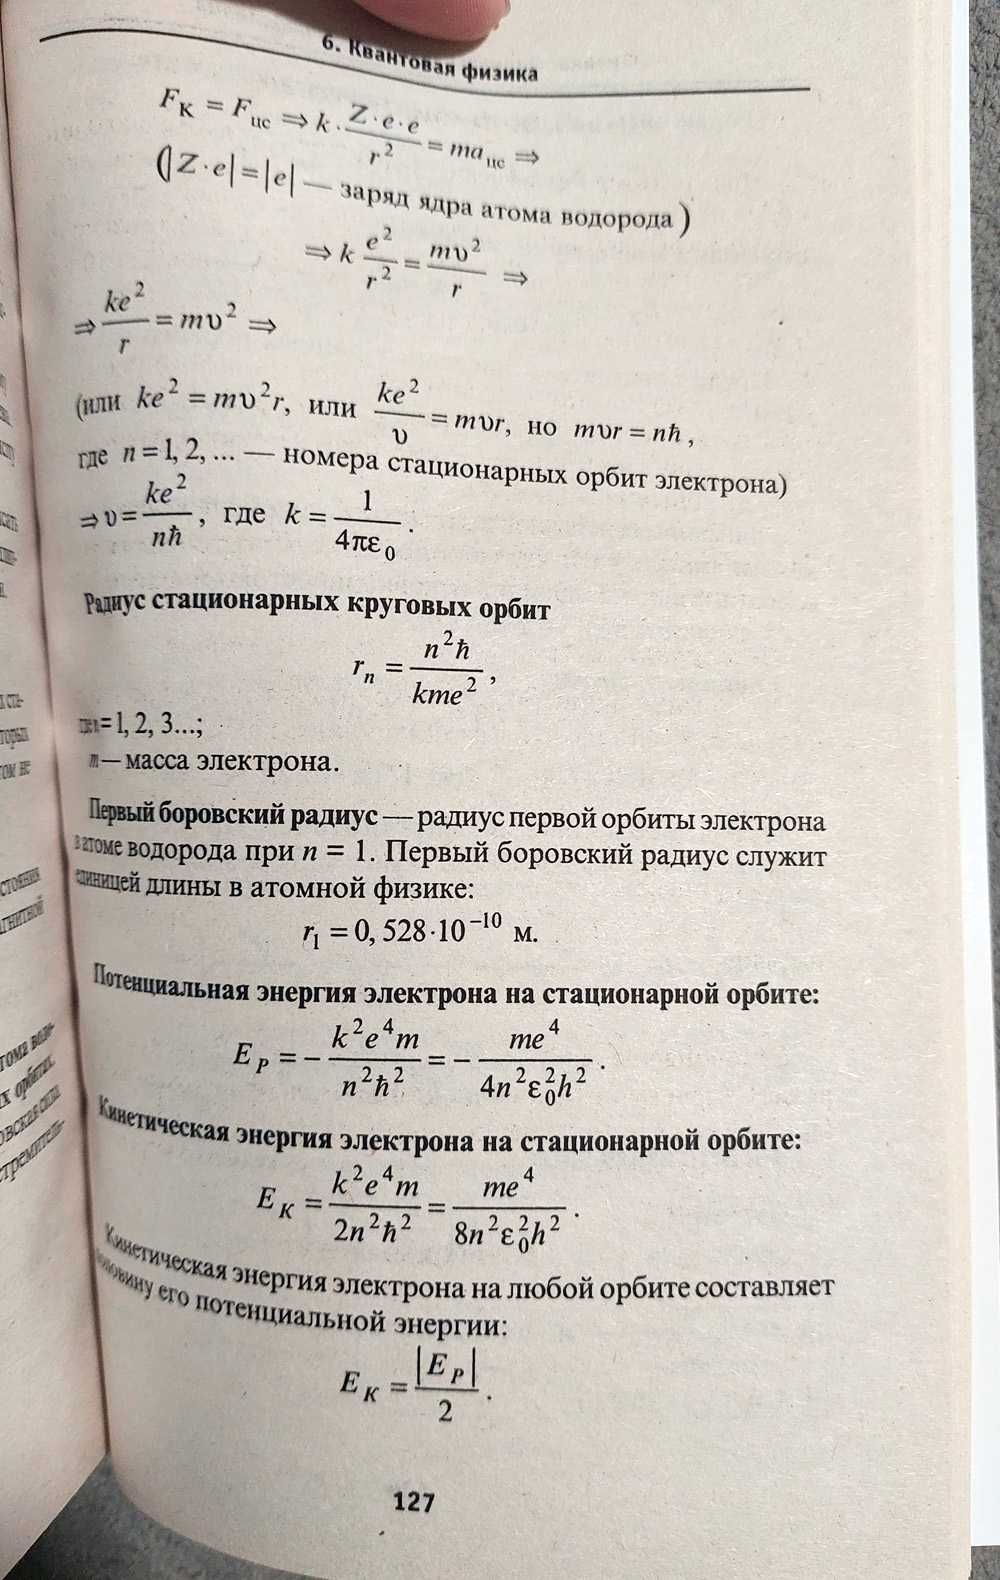 Книга Физика. Формулы, понятия, определения. Э.Н. Гришина, И.Н. Веклюк